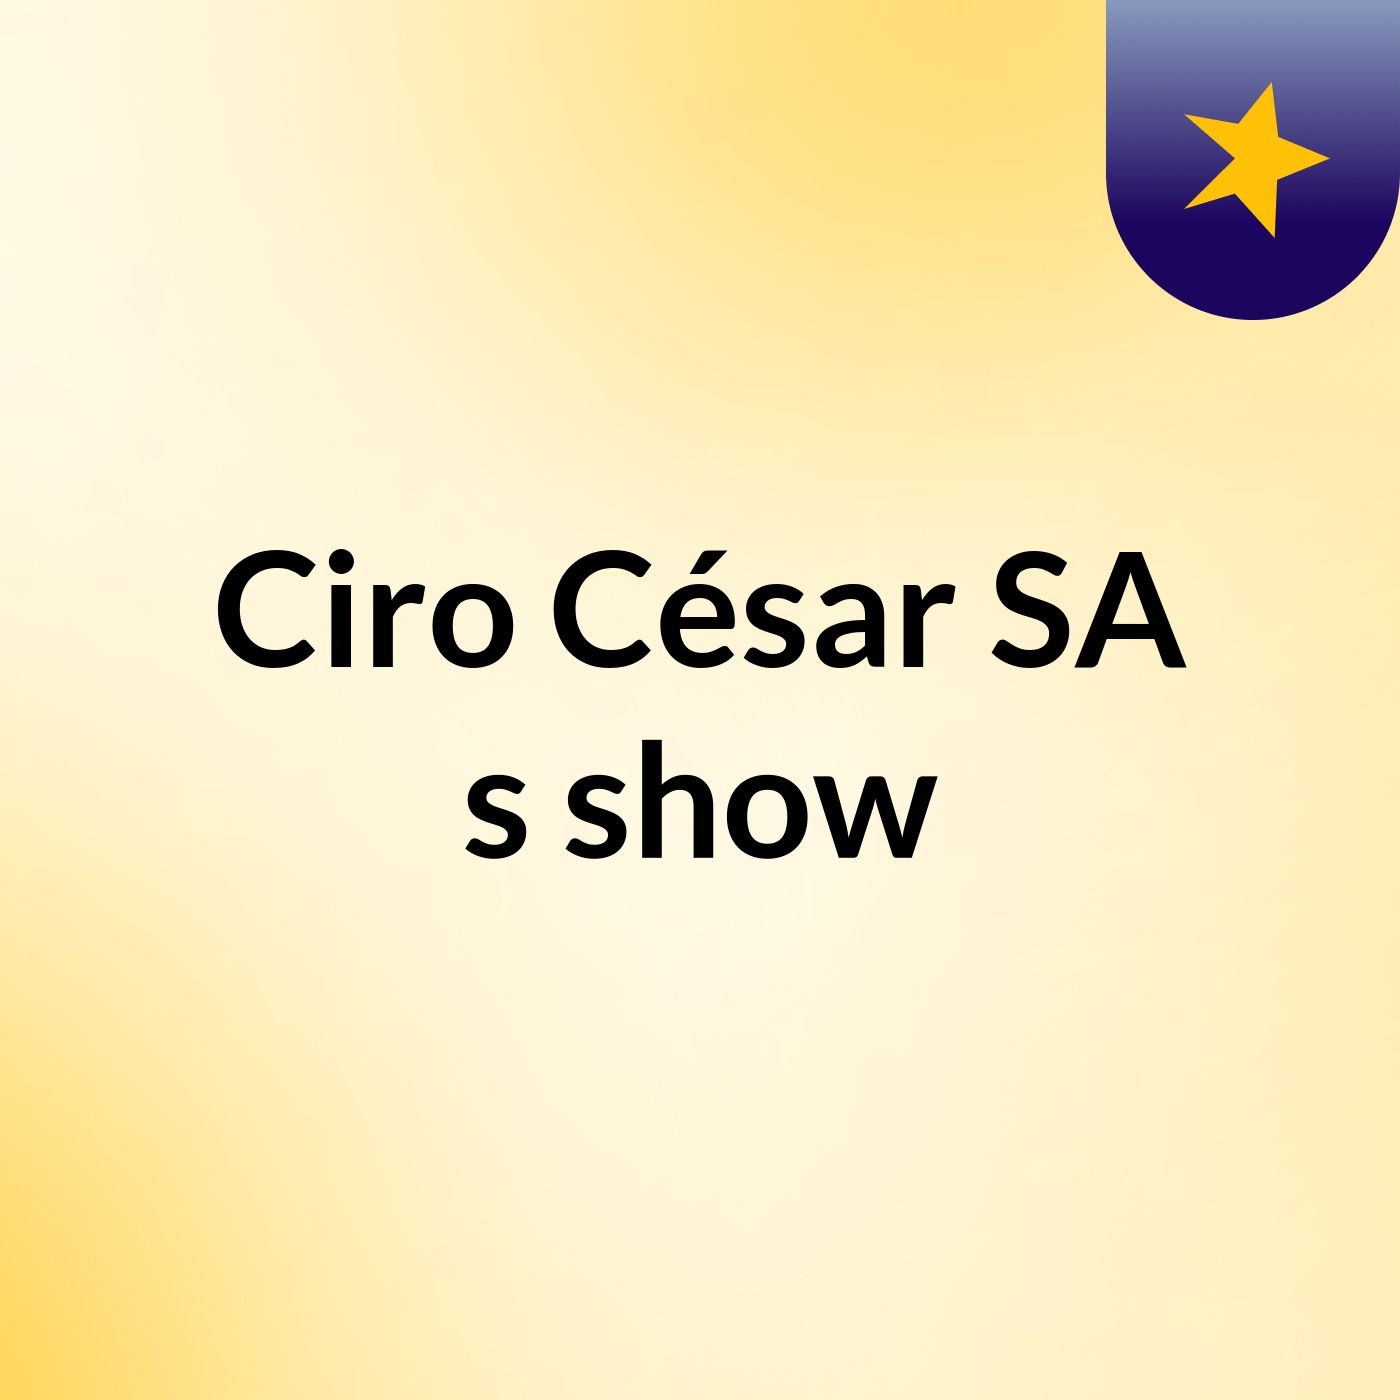 Ciro César SA's show